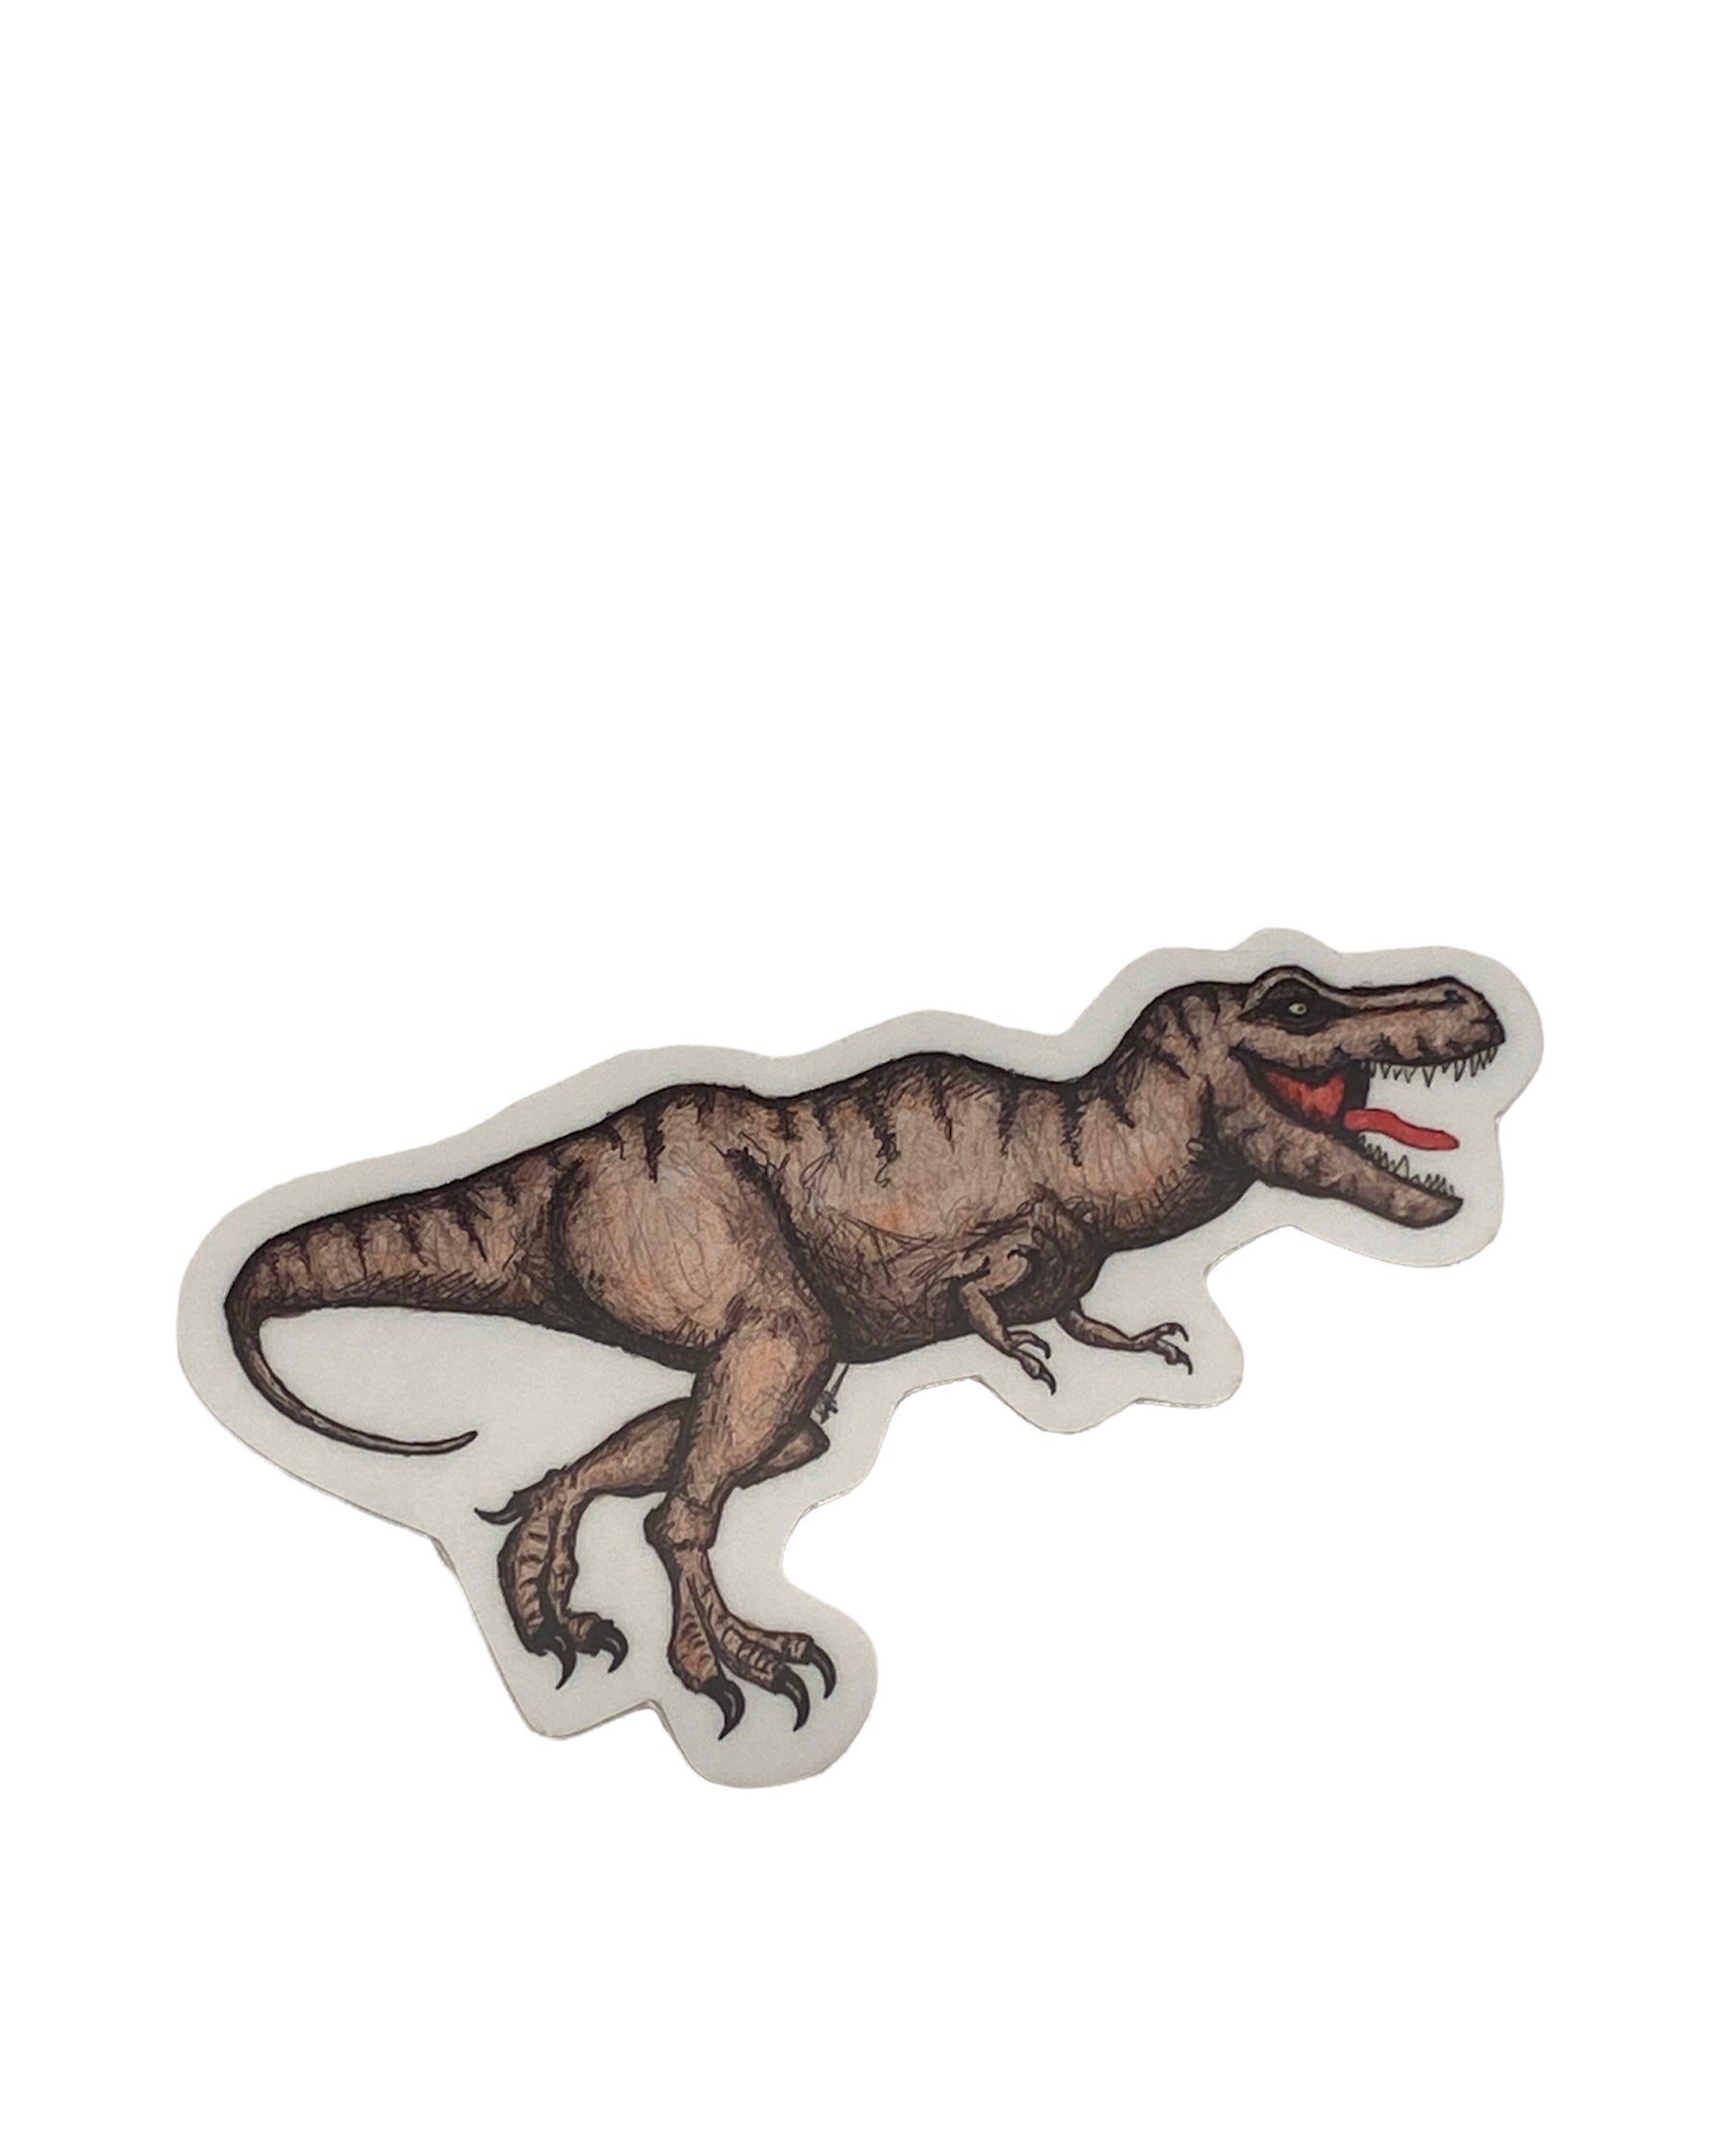 T-Rex Dinosaur Sticker